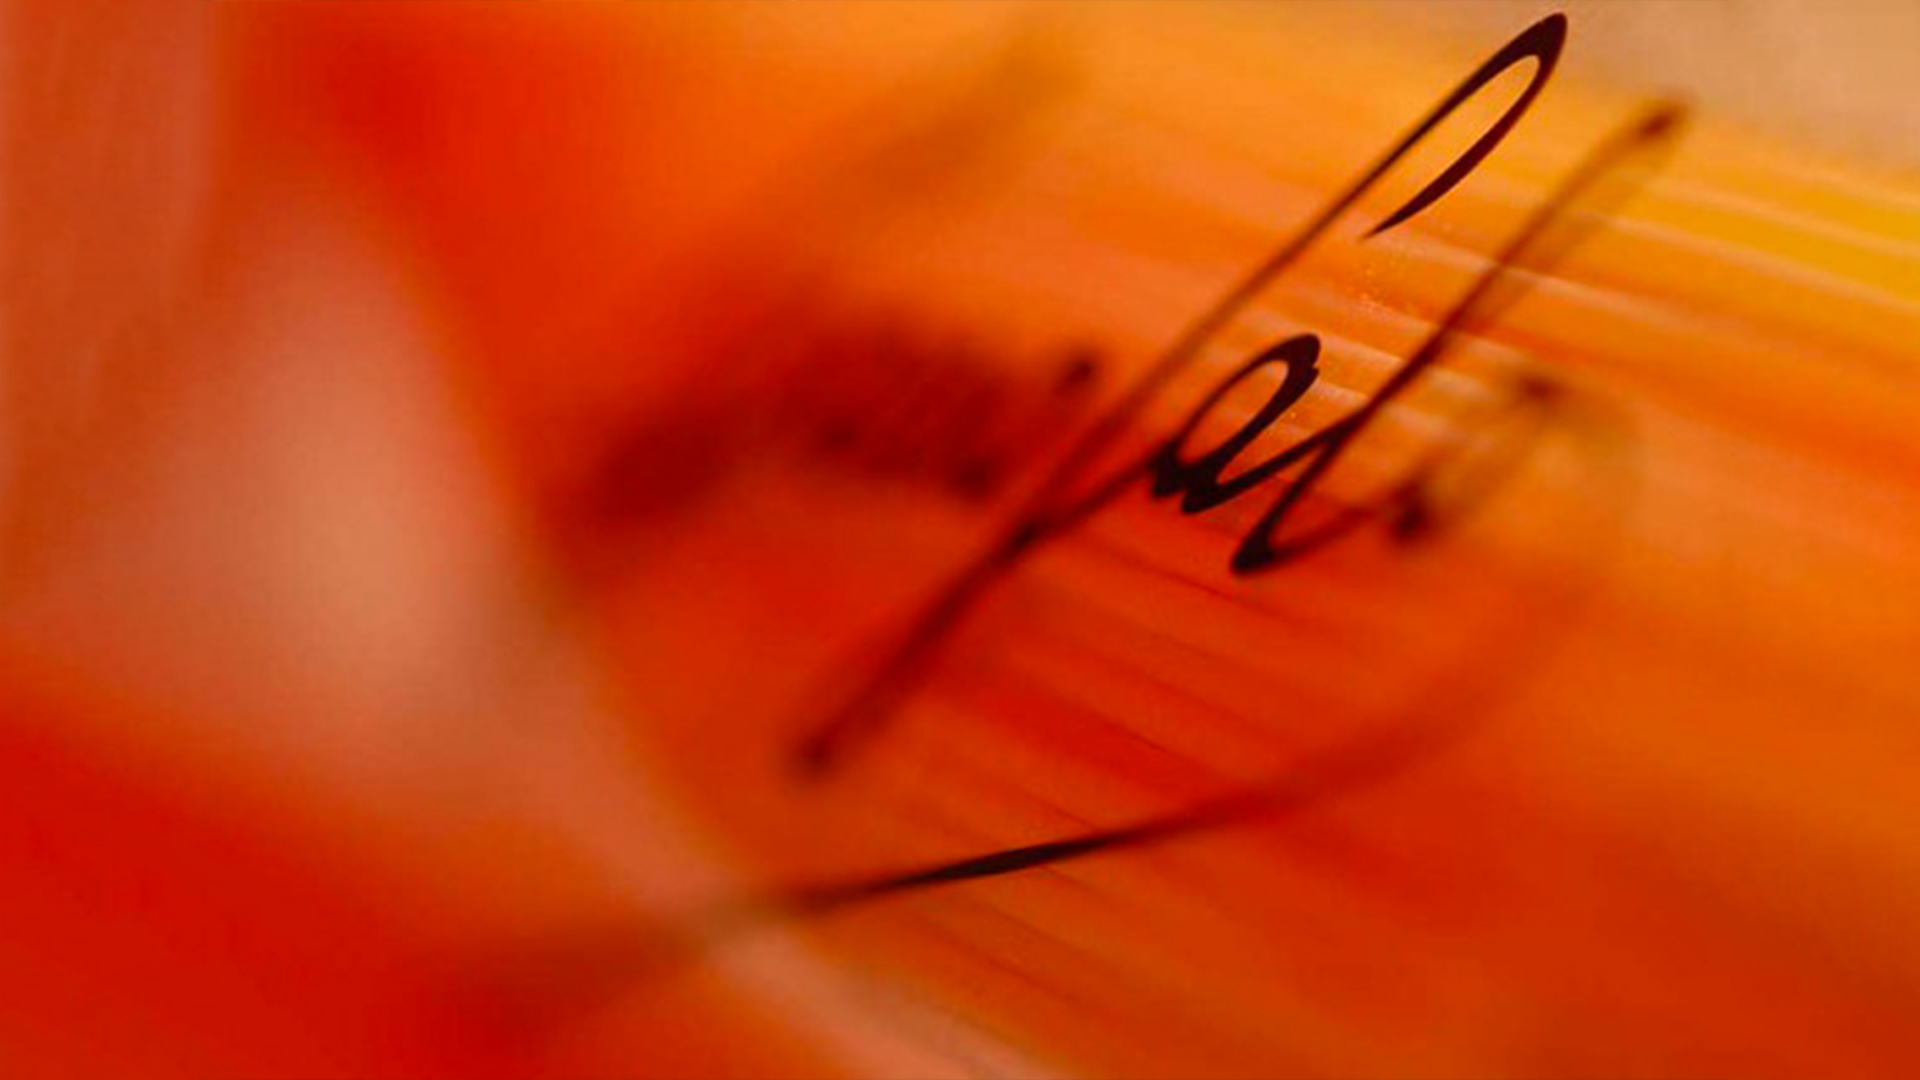 The Garofalo signature